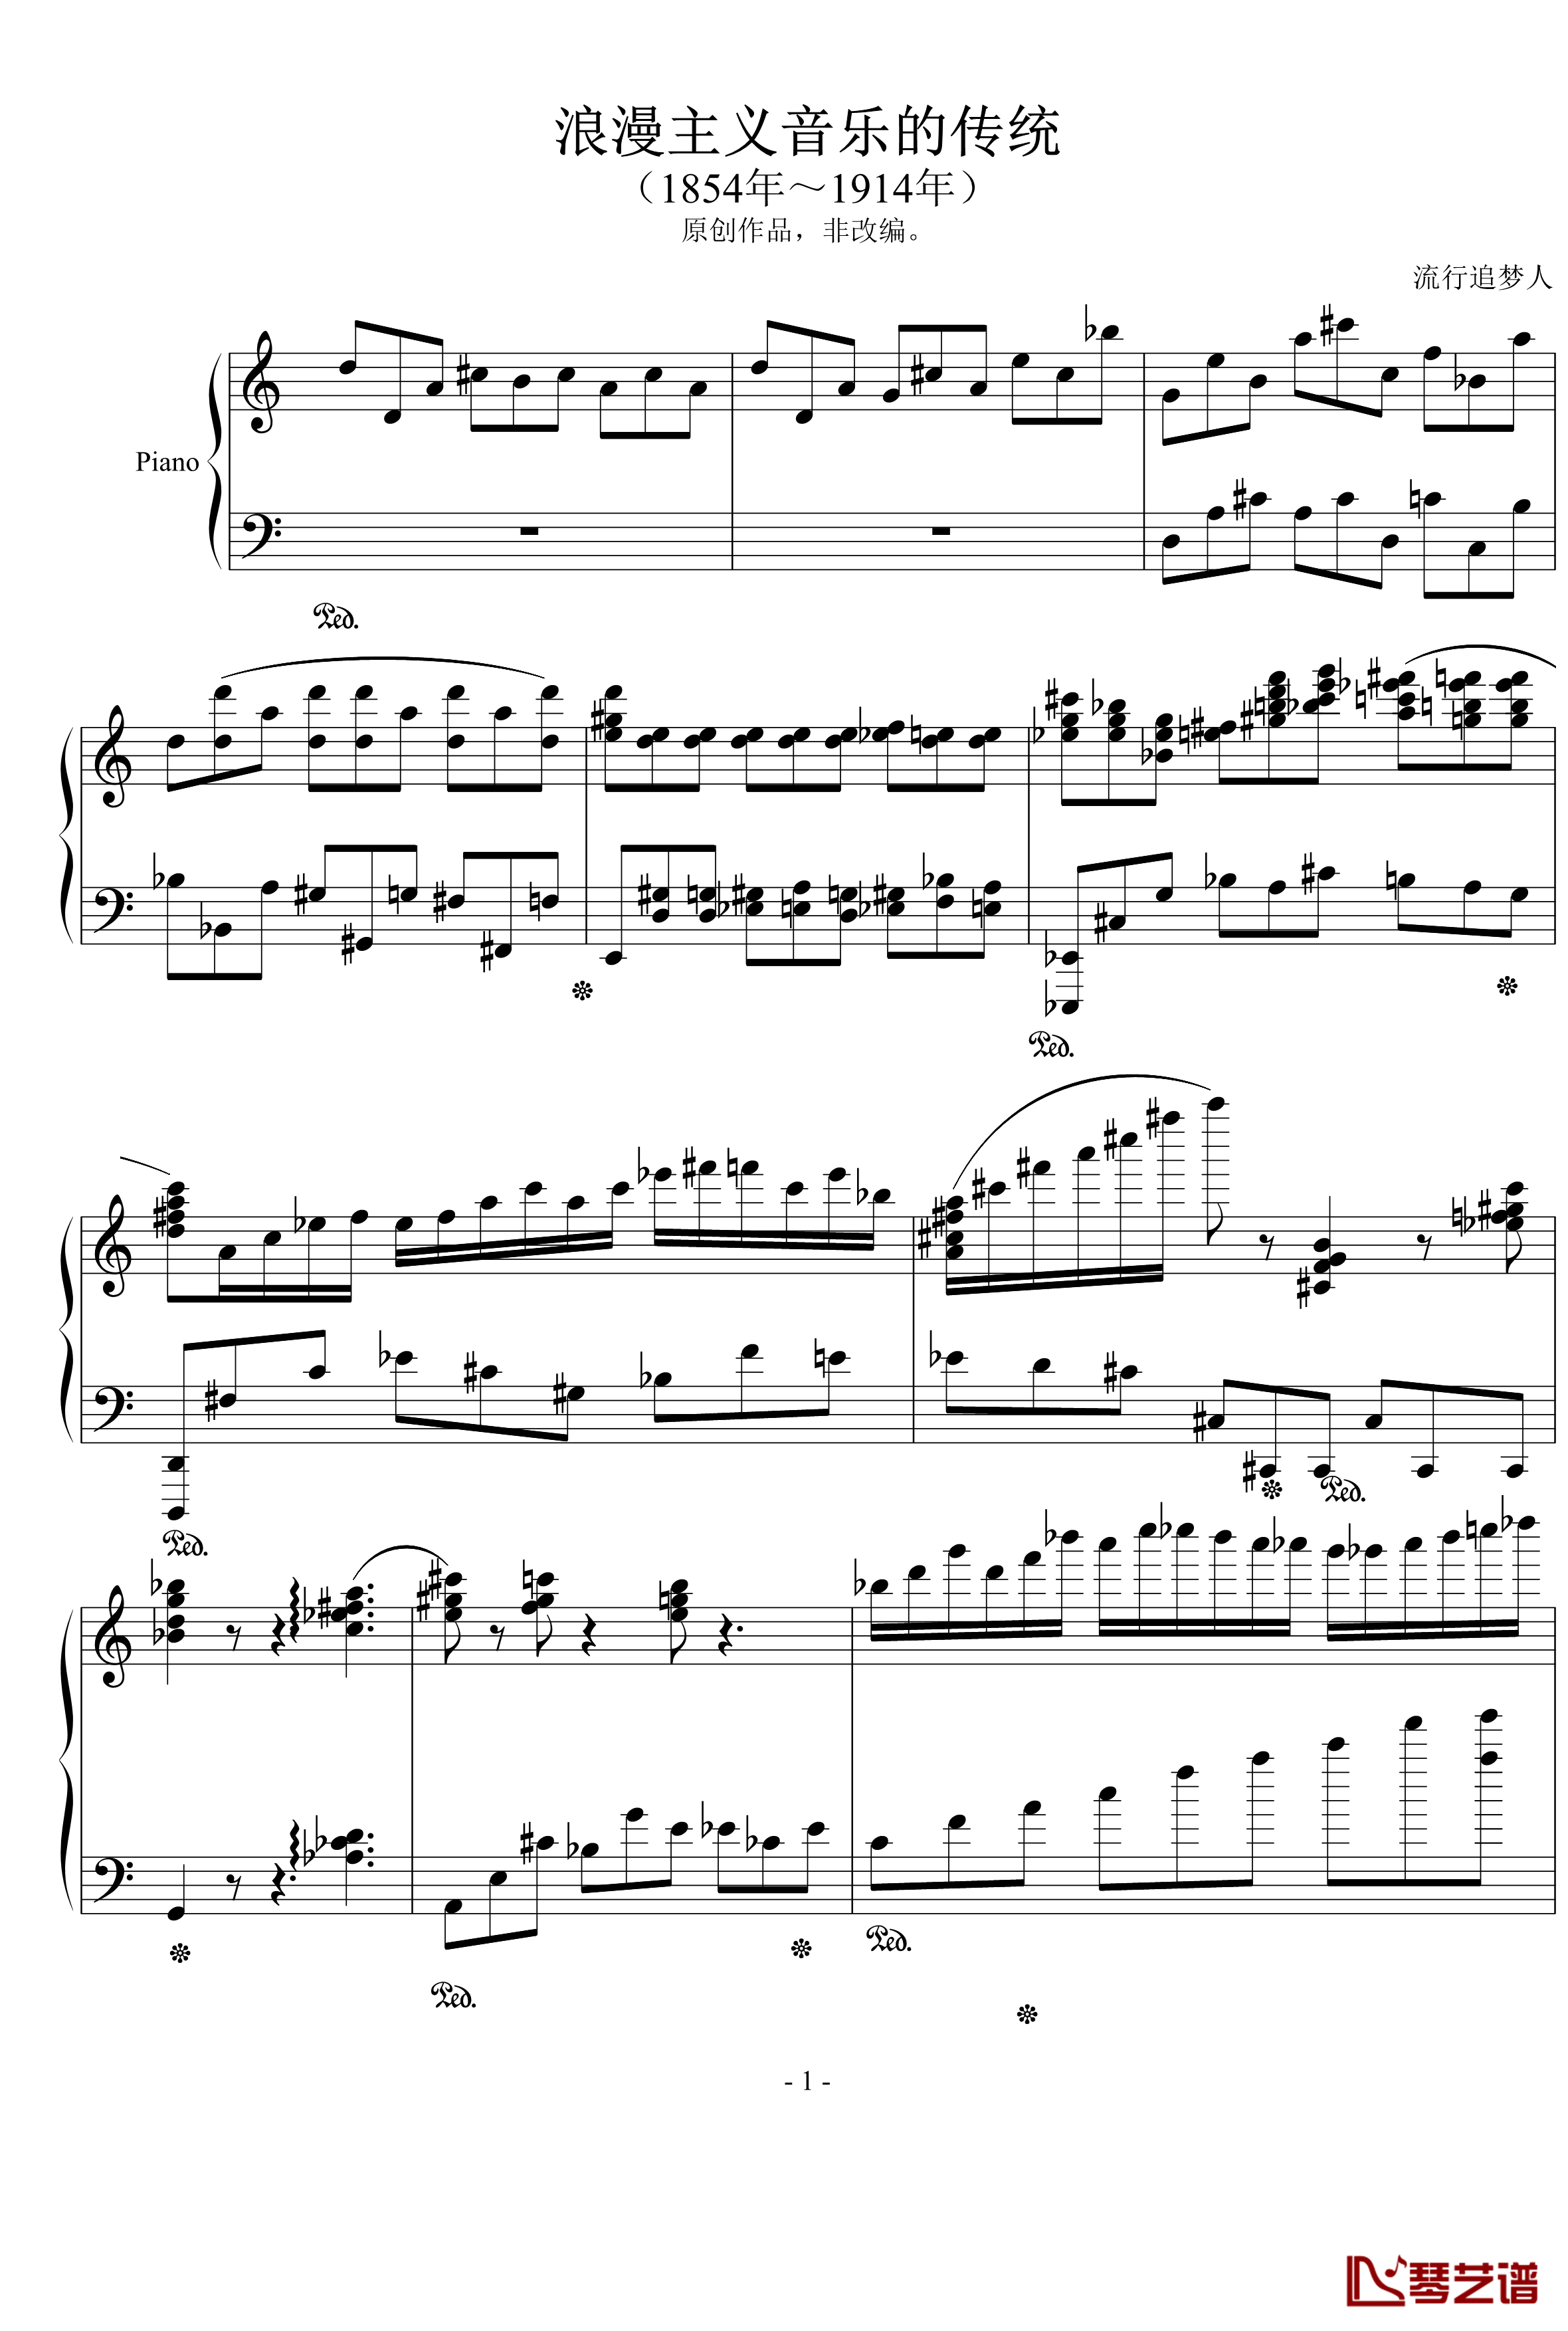 浪漫主义音乐的传统钢琴谱-幻想曲-D大调-流行追梦人1